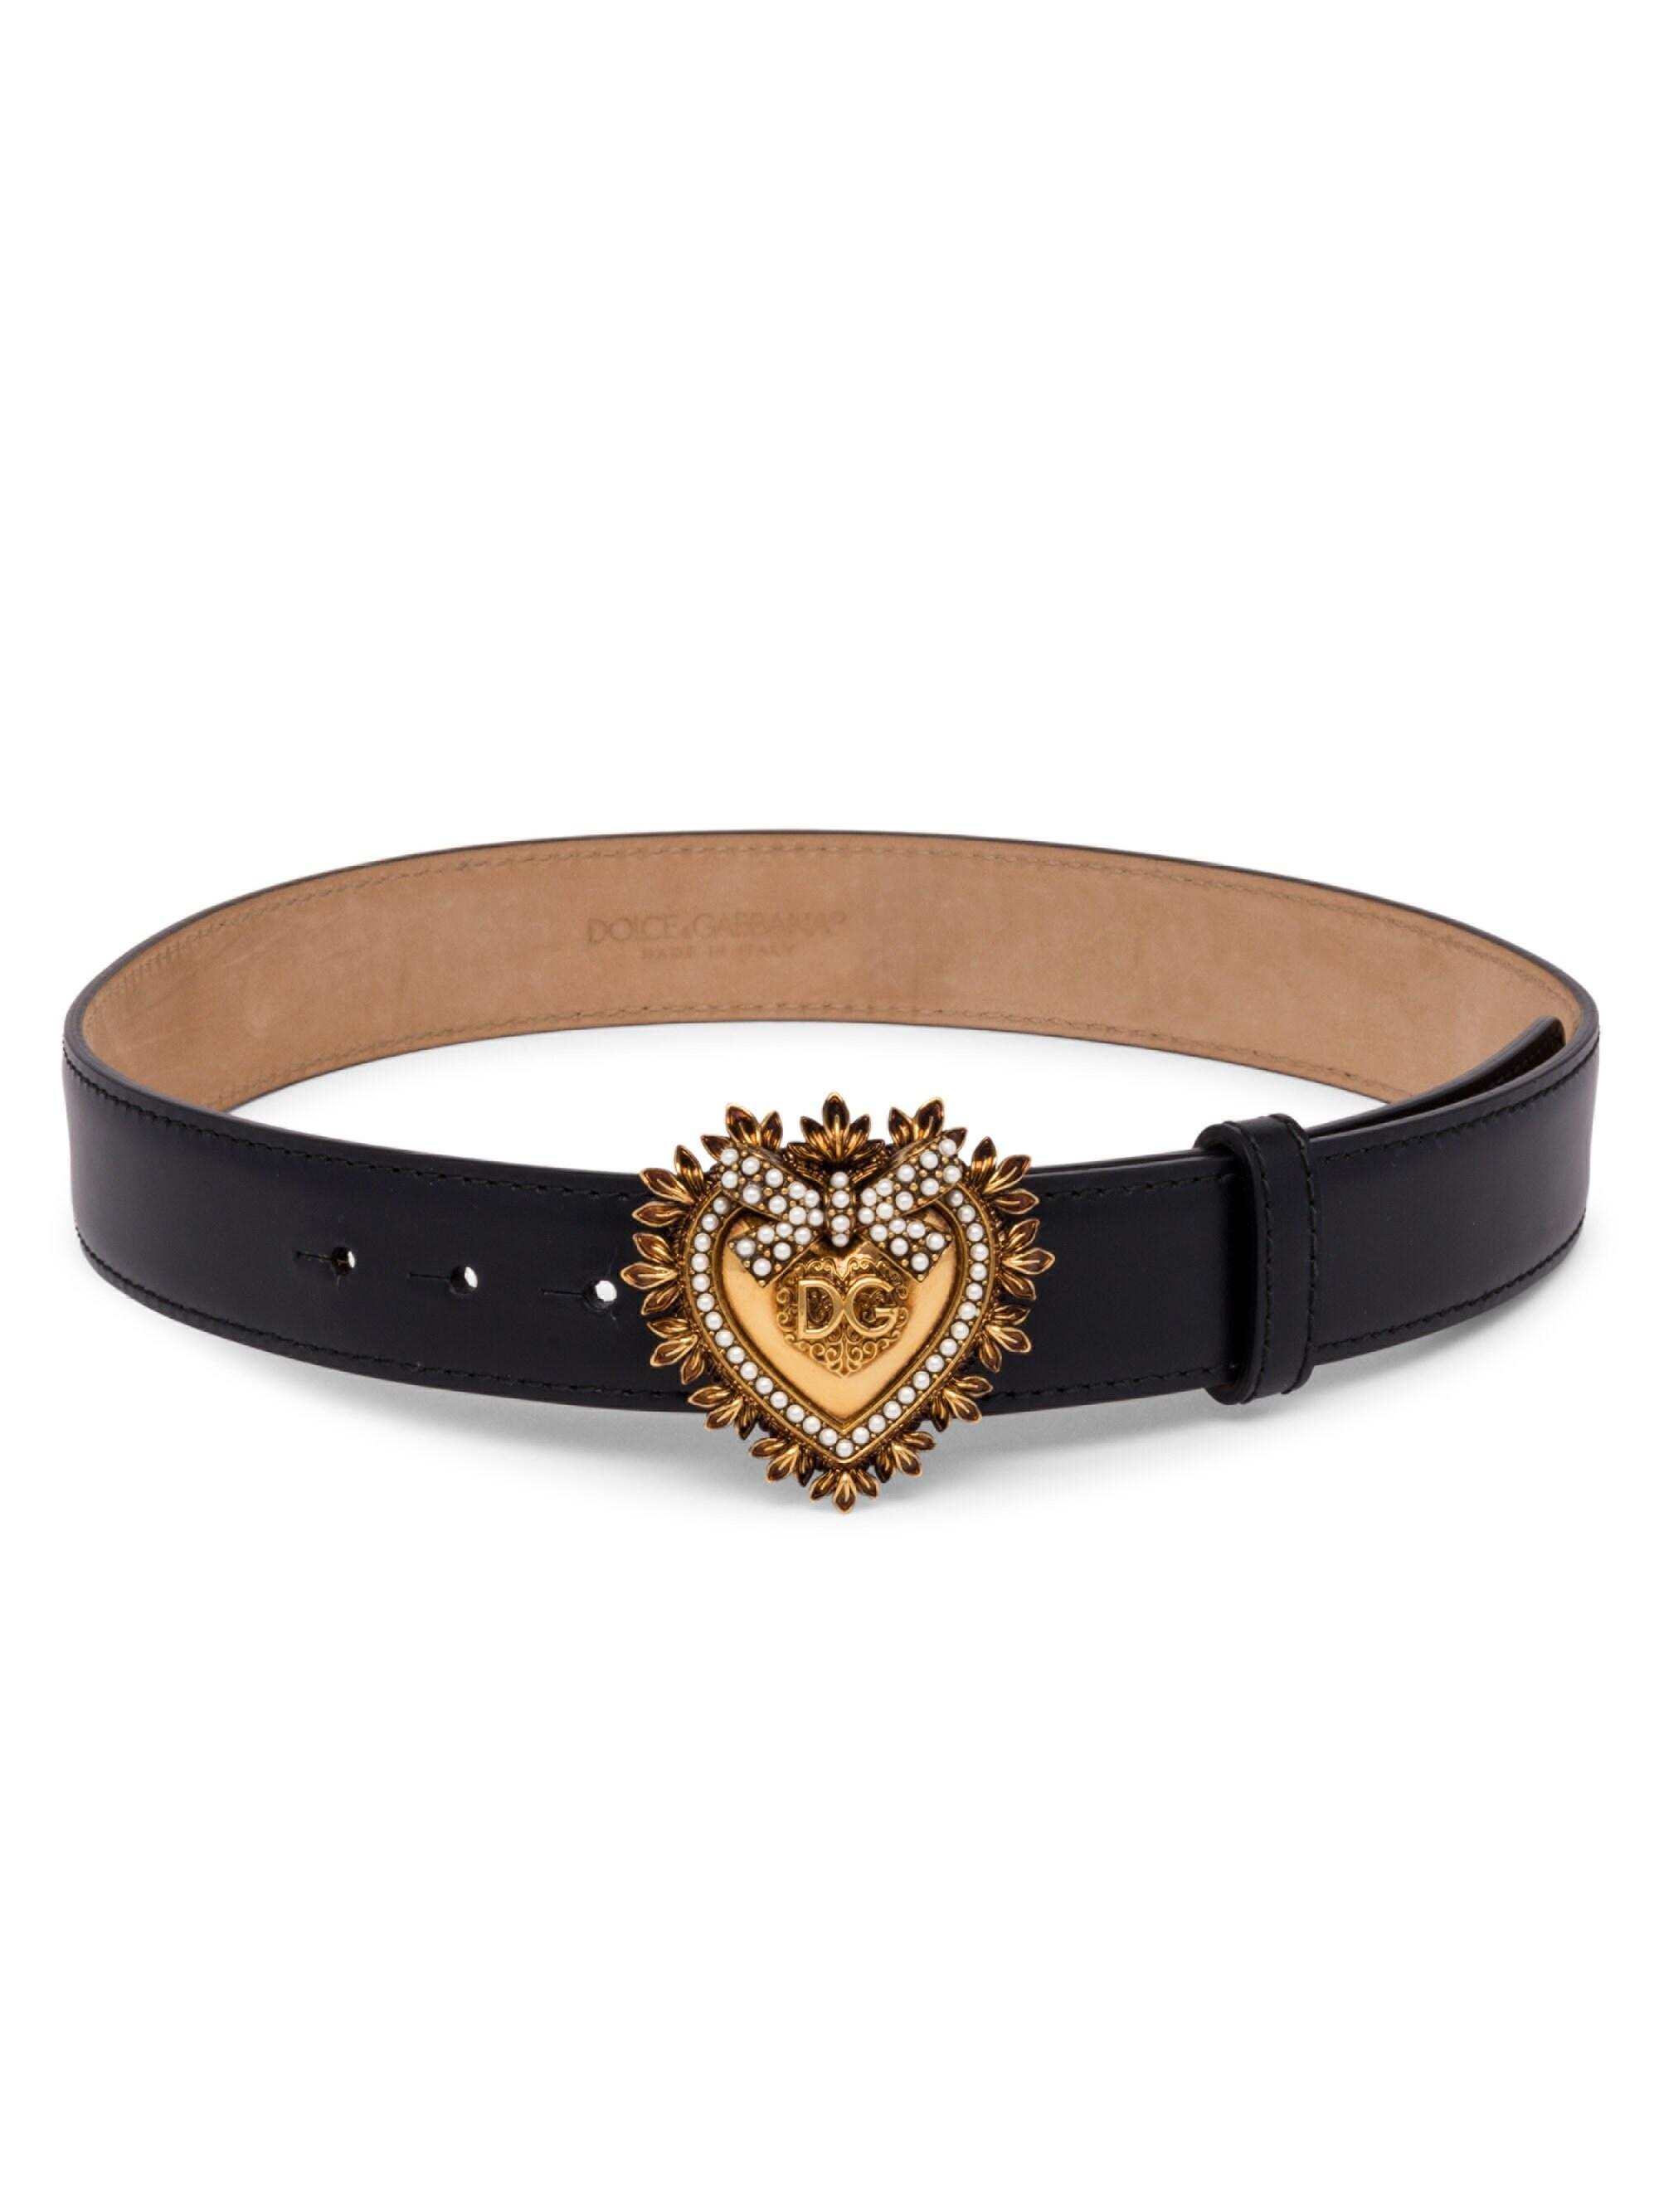 Dolce & Gabbana Devotion Heart Leather Belt in Black for Men - Lyst